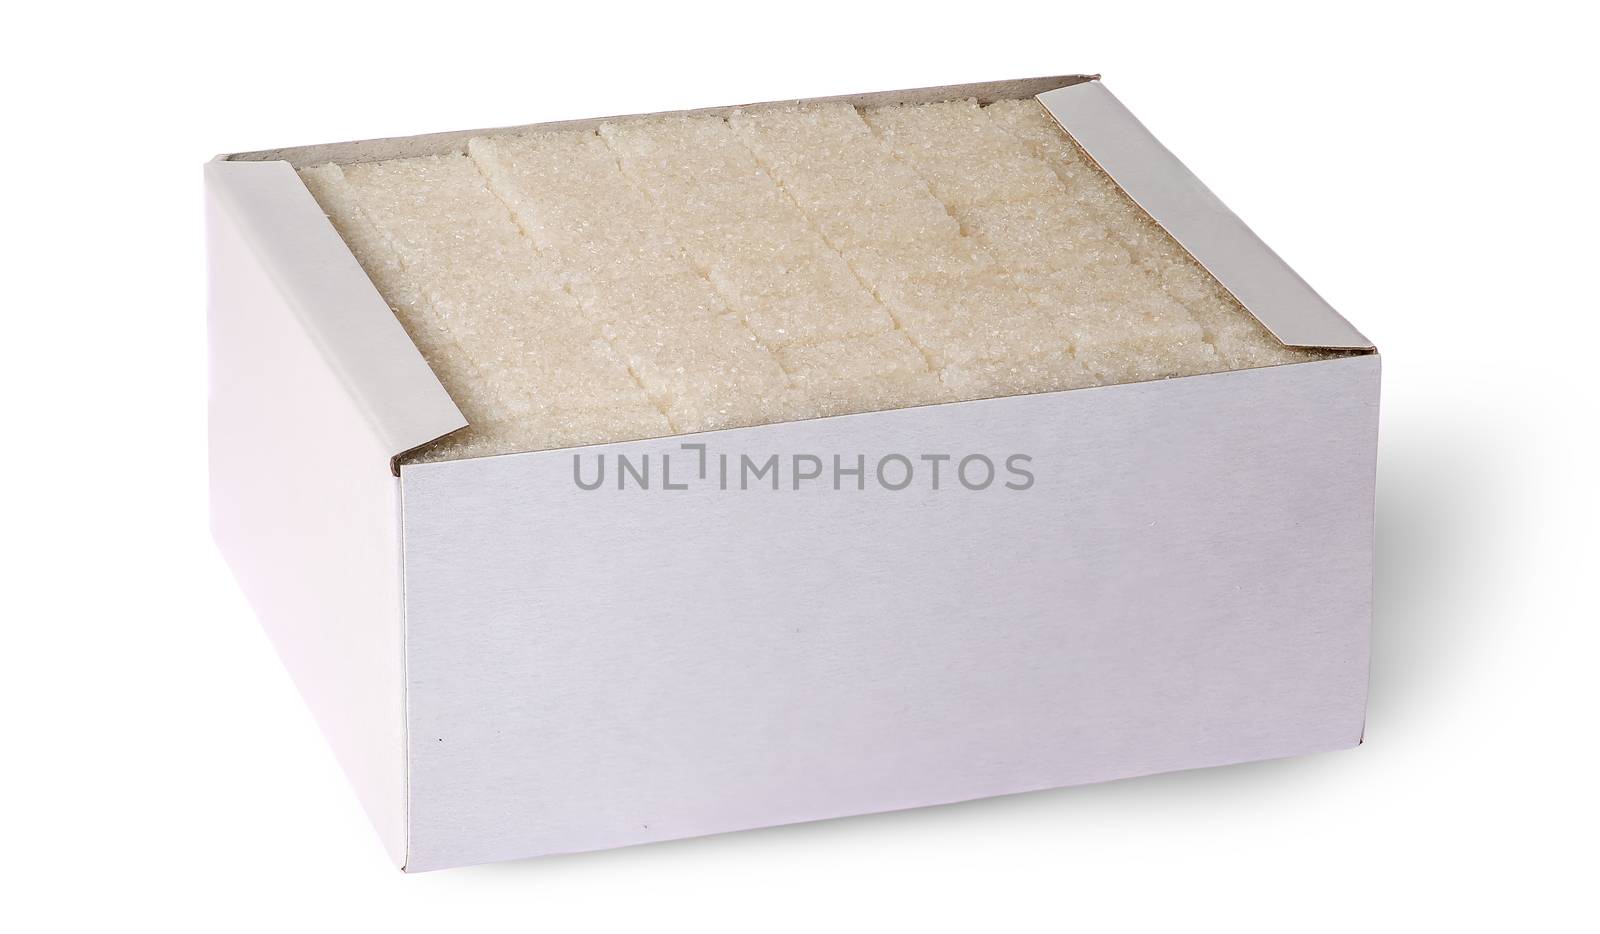 White sugar cubes in a box by Cipariss